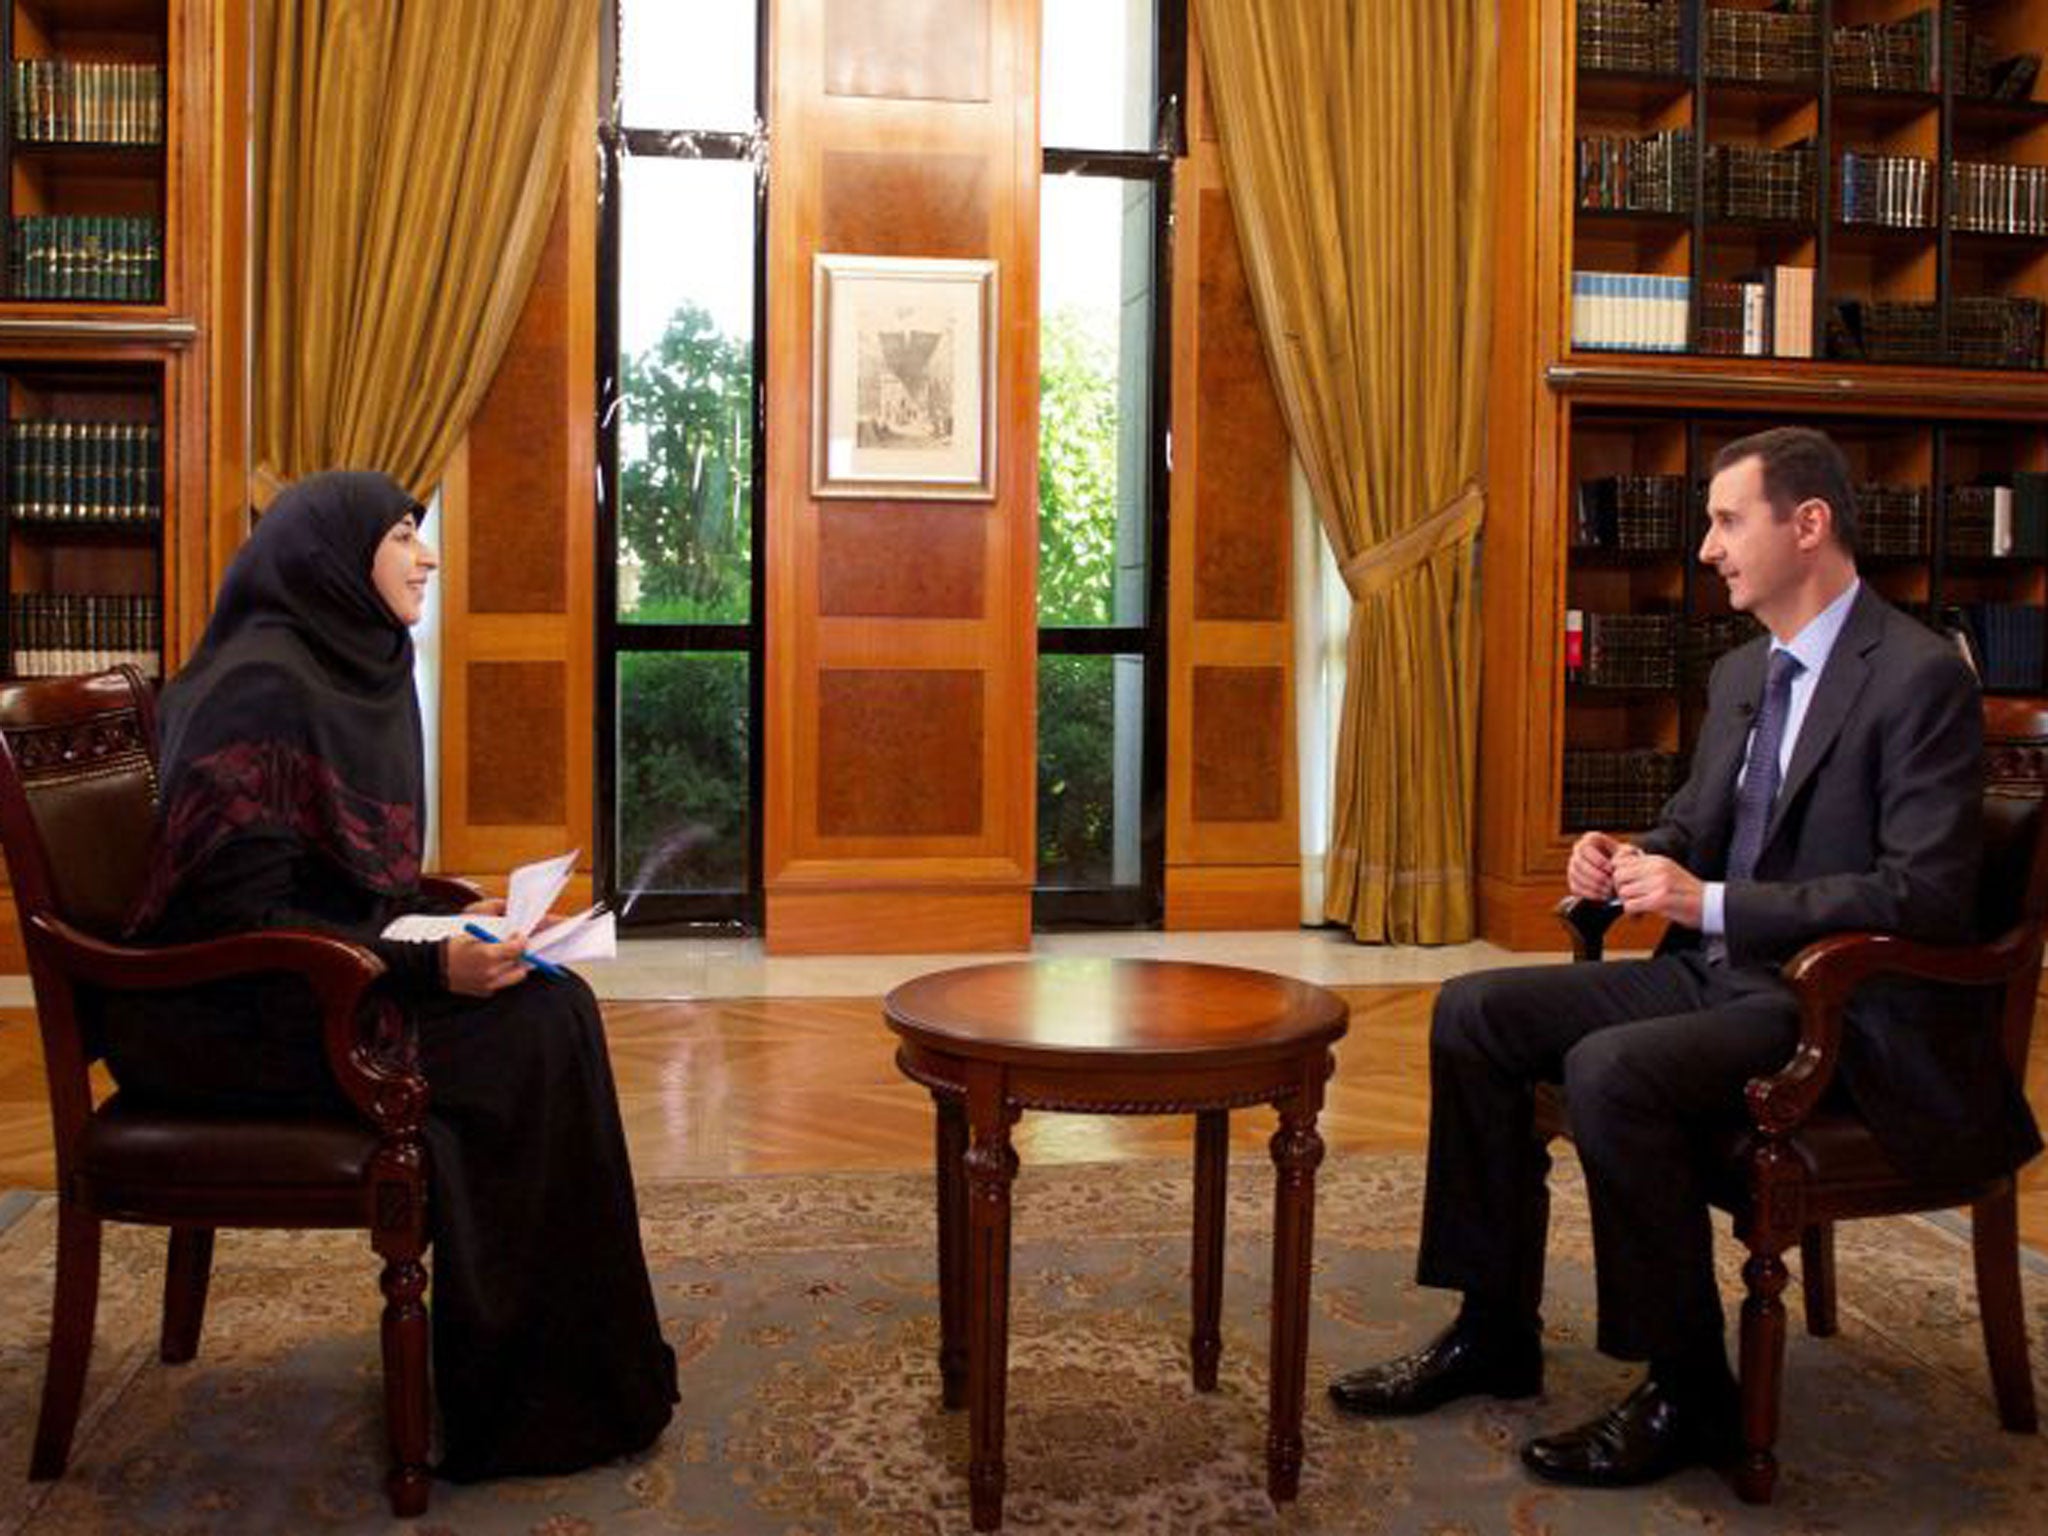 President Assad threatened on Lebanese TV to strike back against any Israeli attack